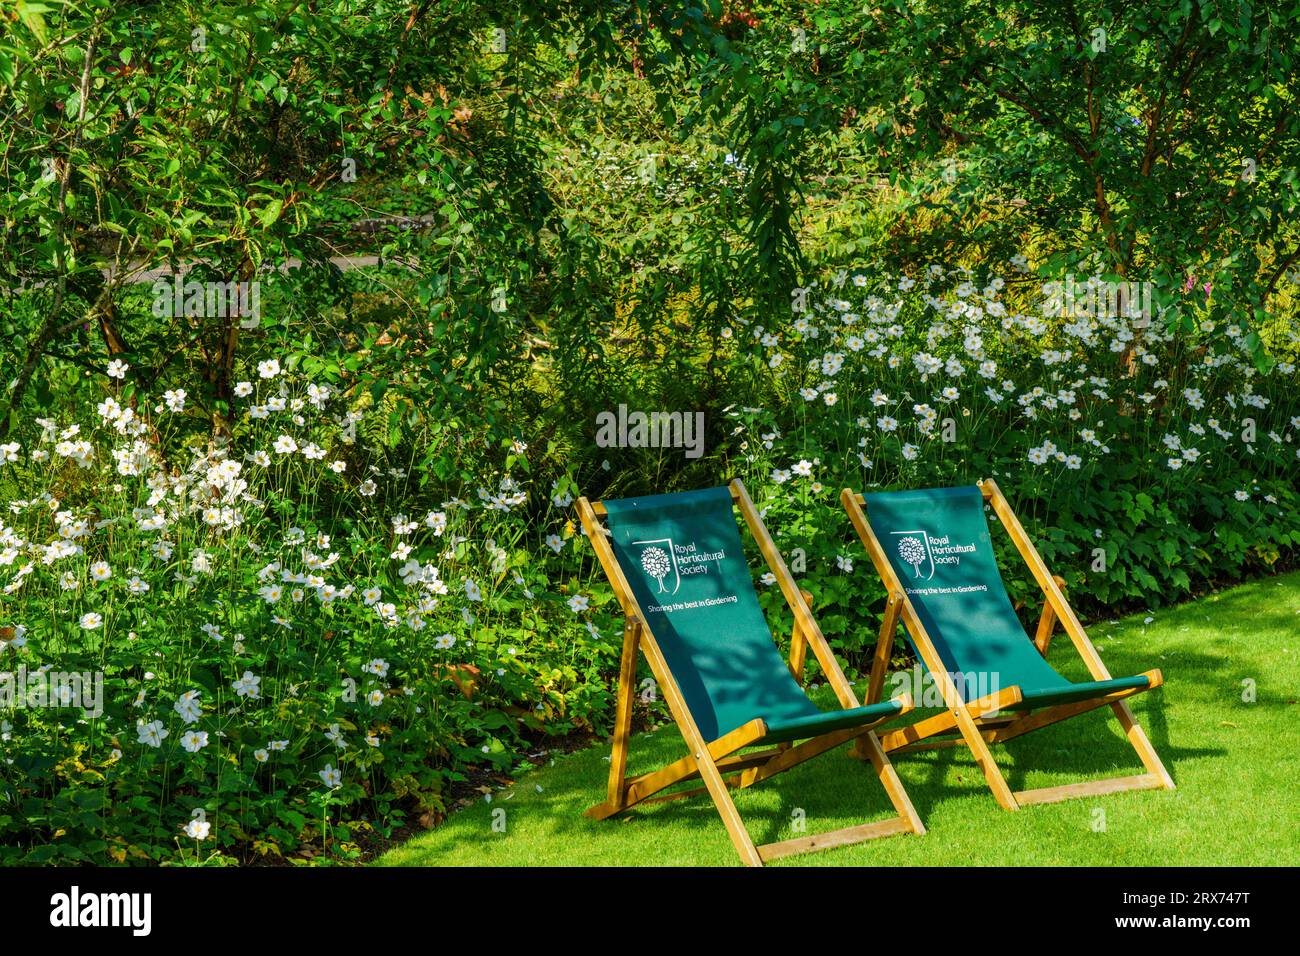 Due sedie a sdraio verdi su un prato con fiori di anemone cinesi bianchi e alberi frondosi sullo sfondo, RHS Garden, Harlow Carr, Harrogate, Regno Unito. Foto Stock